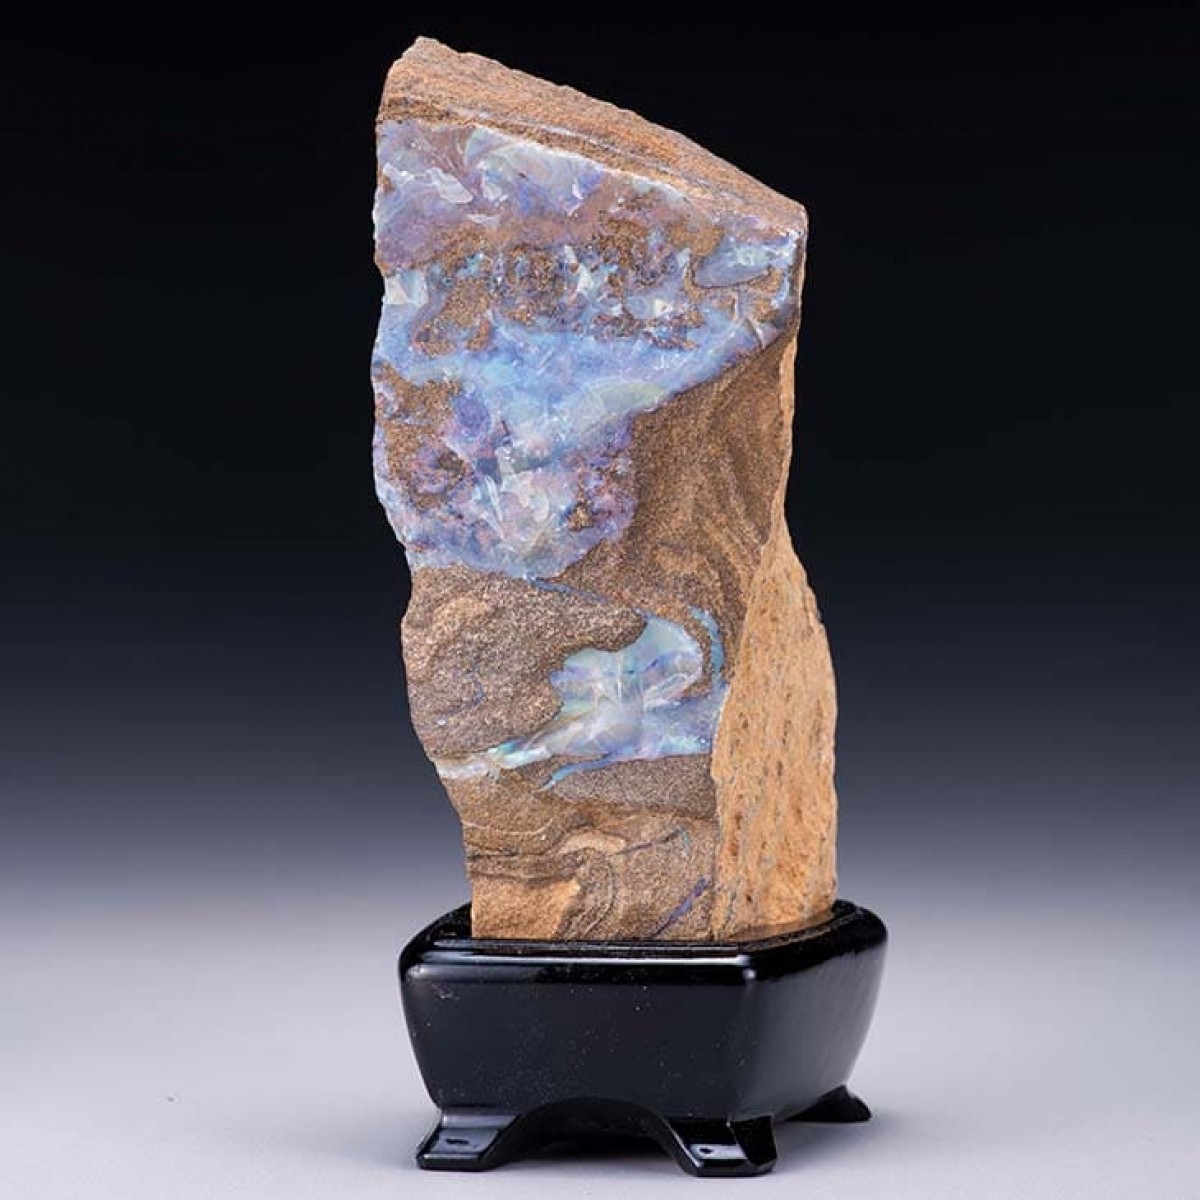 コレクター必見 オーストラリア産 オパール原石(2)原石重量340g